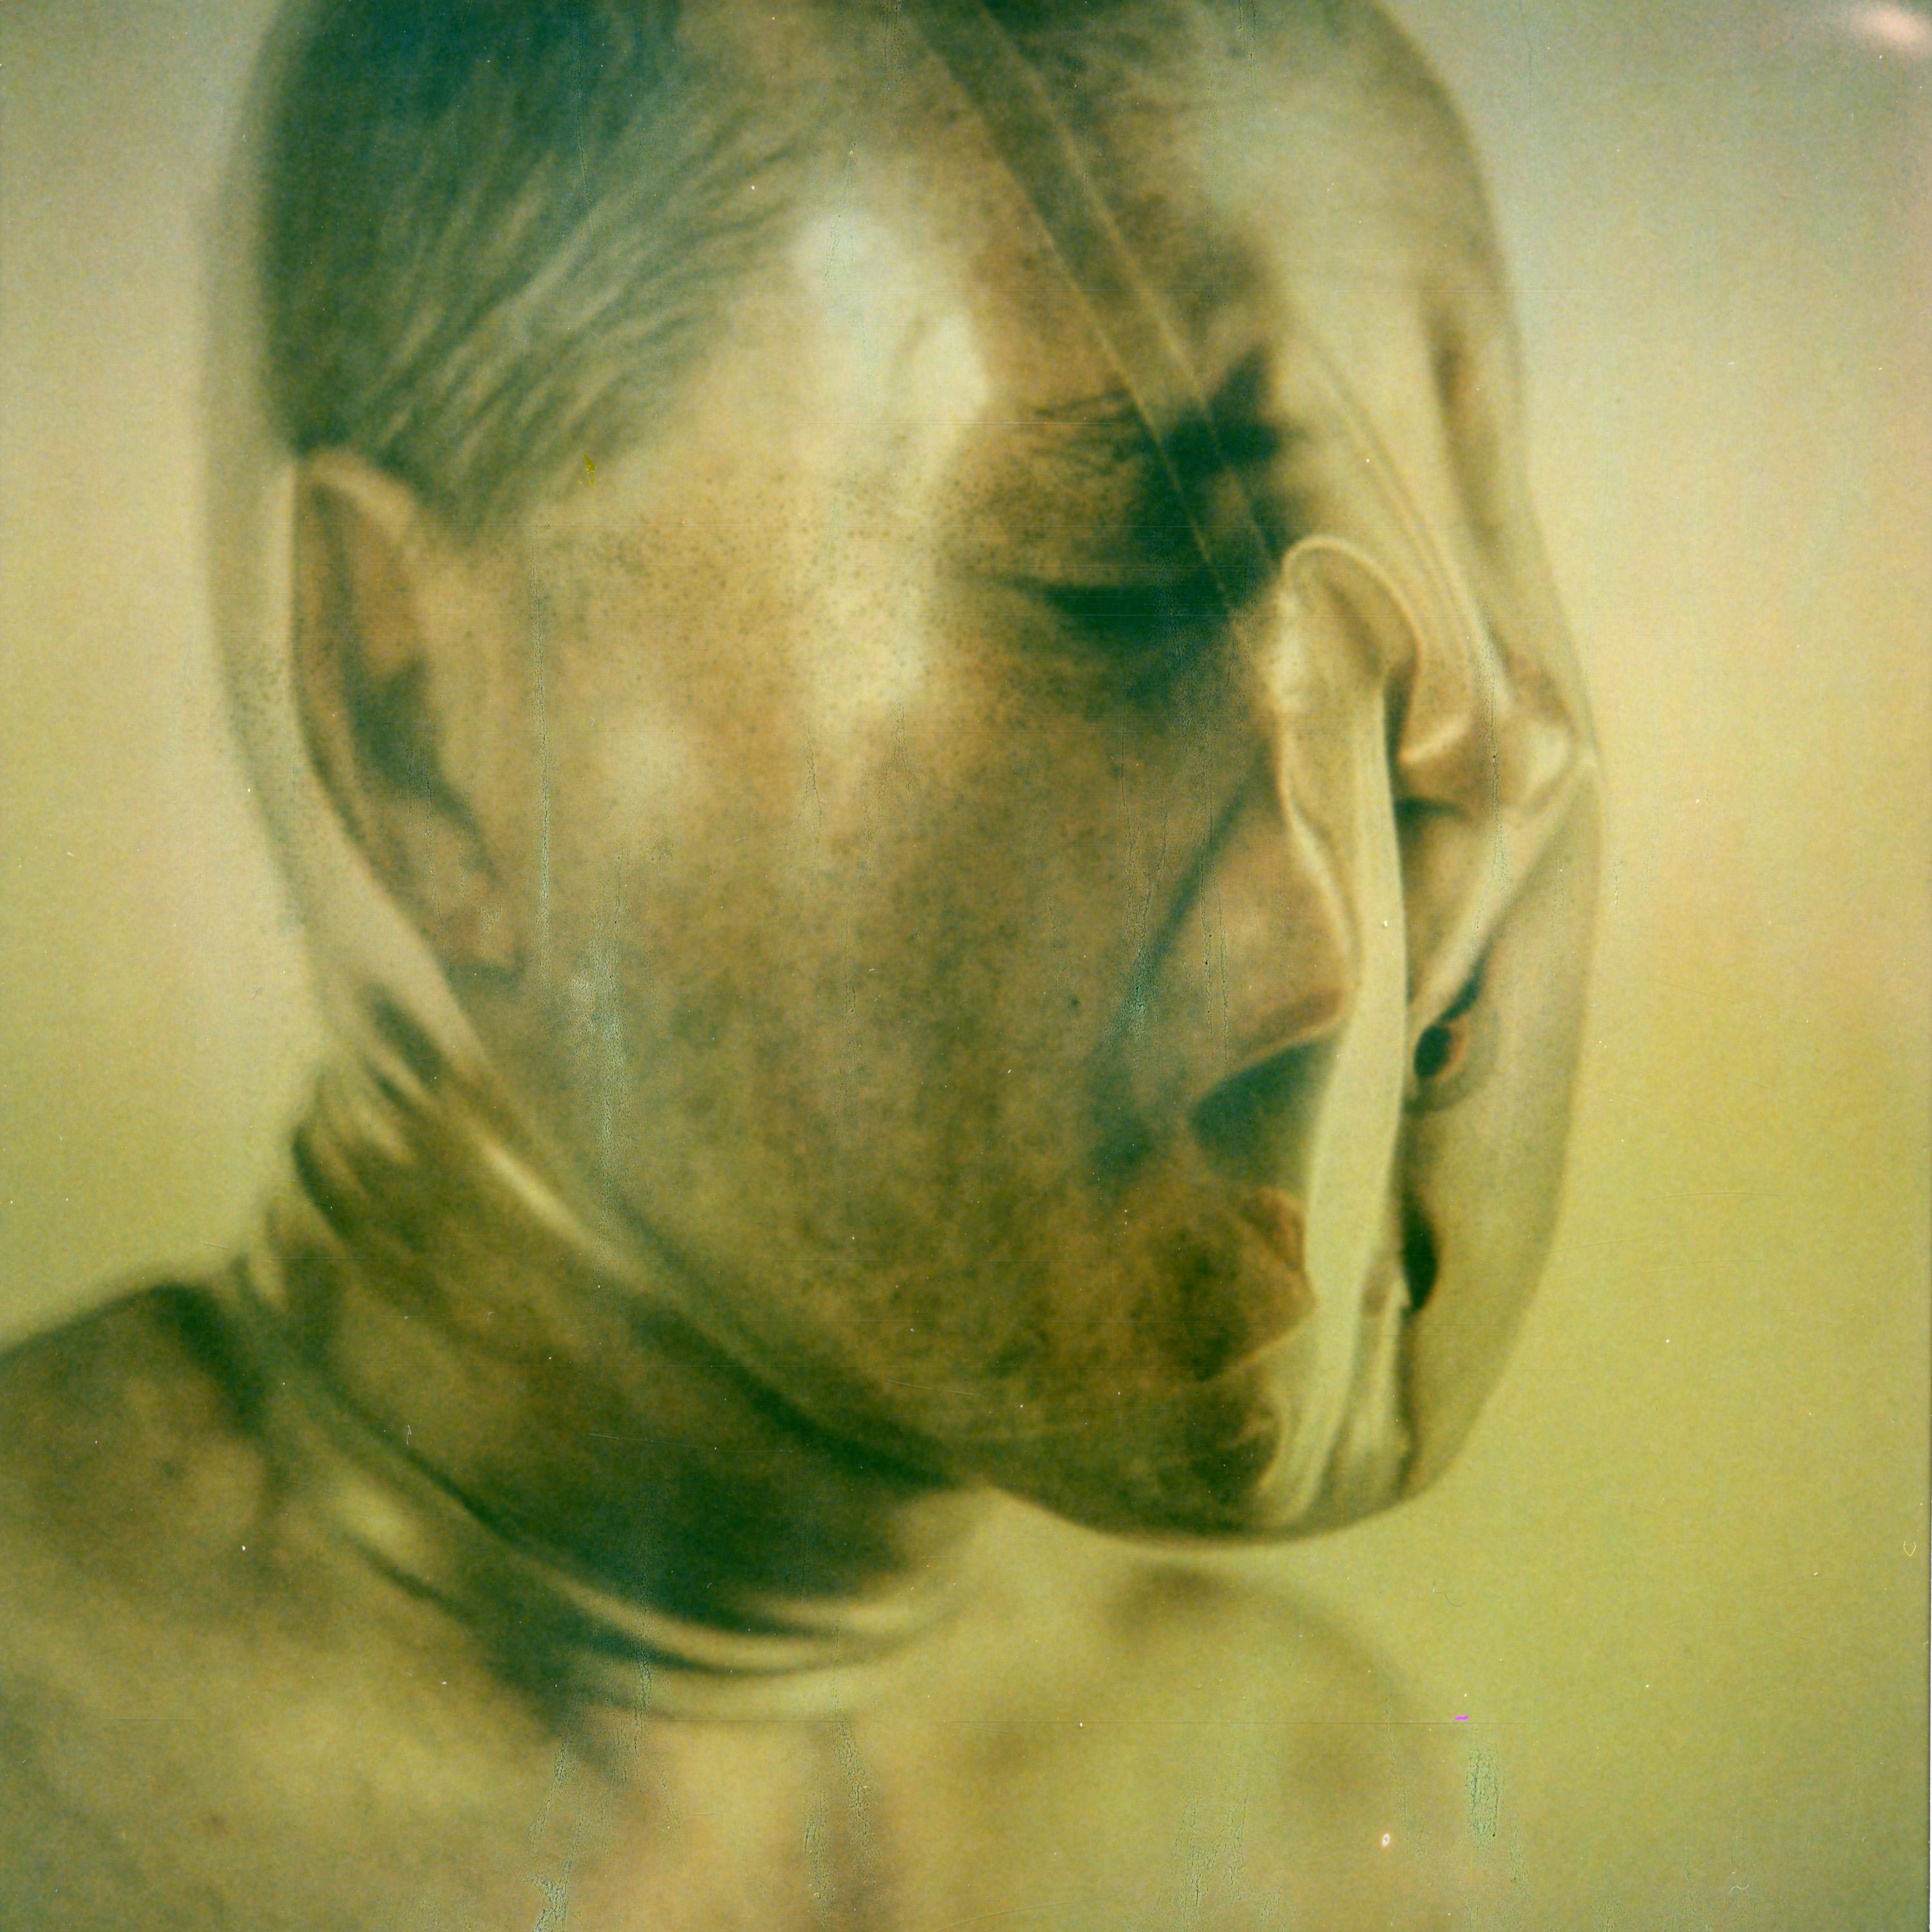 Kirsten Thys van den Audenaerde Color Photograph - Drowning the Noise - Contemporary, Portrait, Women, Polaroid